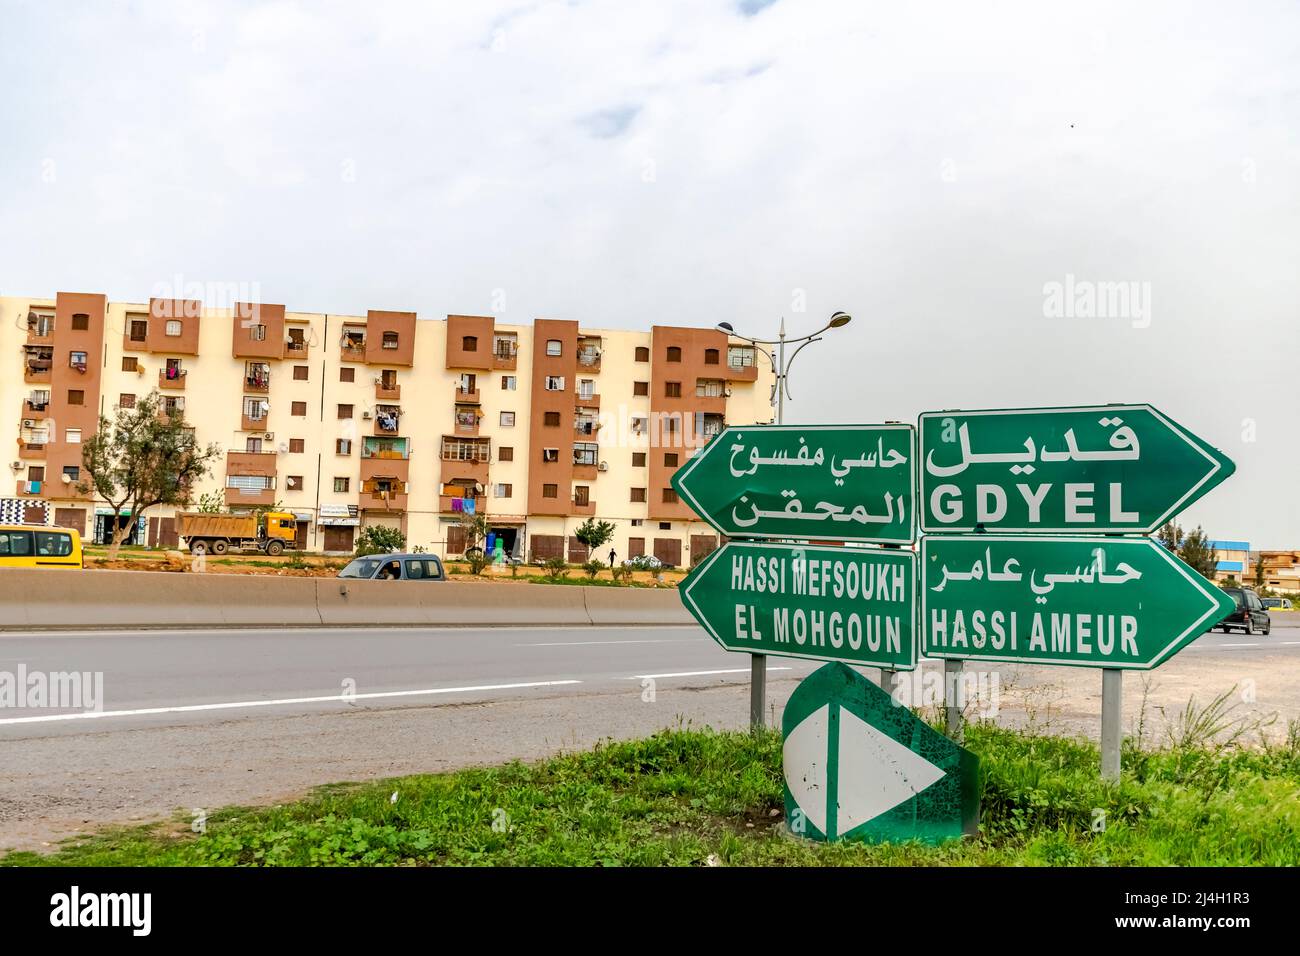 Cartello stradale di Gdyel, Hassi Amer, El Mohgoun e Hassi Mefsoukh. Caratteri arabi e francesi. Incrocio autostradale e edifici abitati. Foto Stock